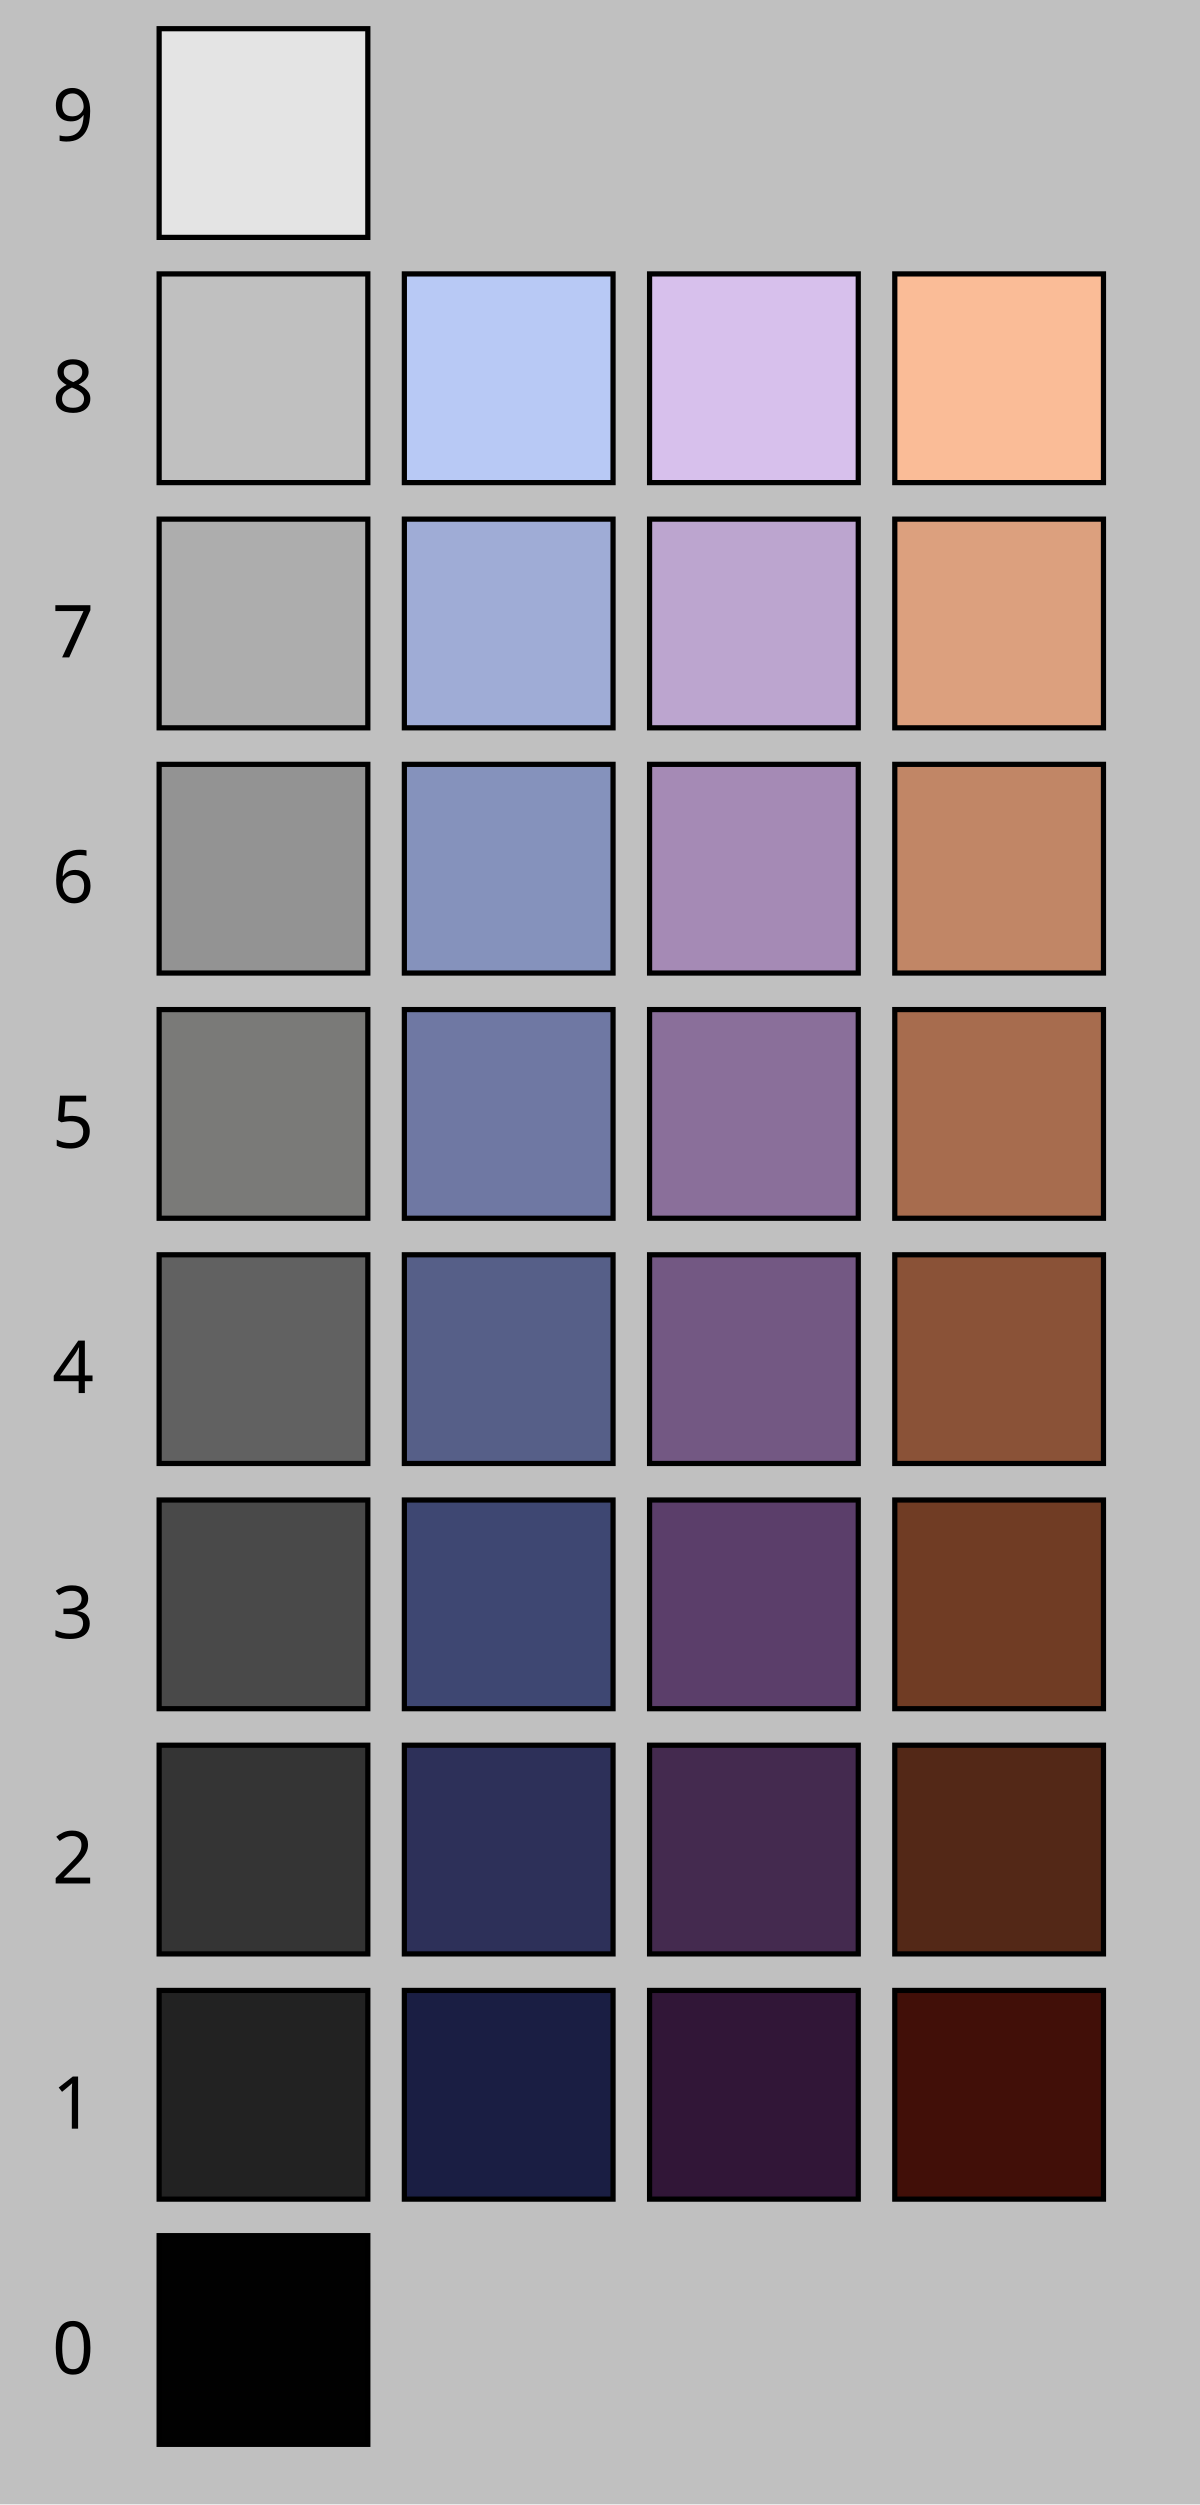 Colour Value Chart